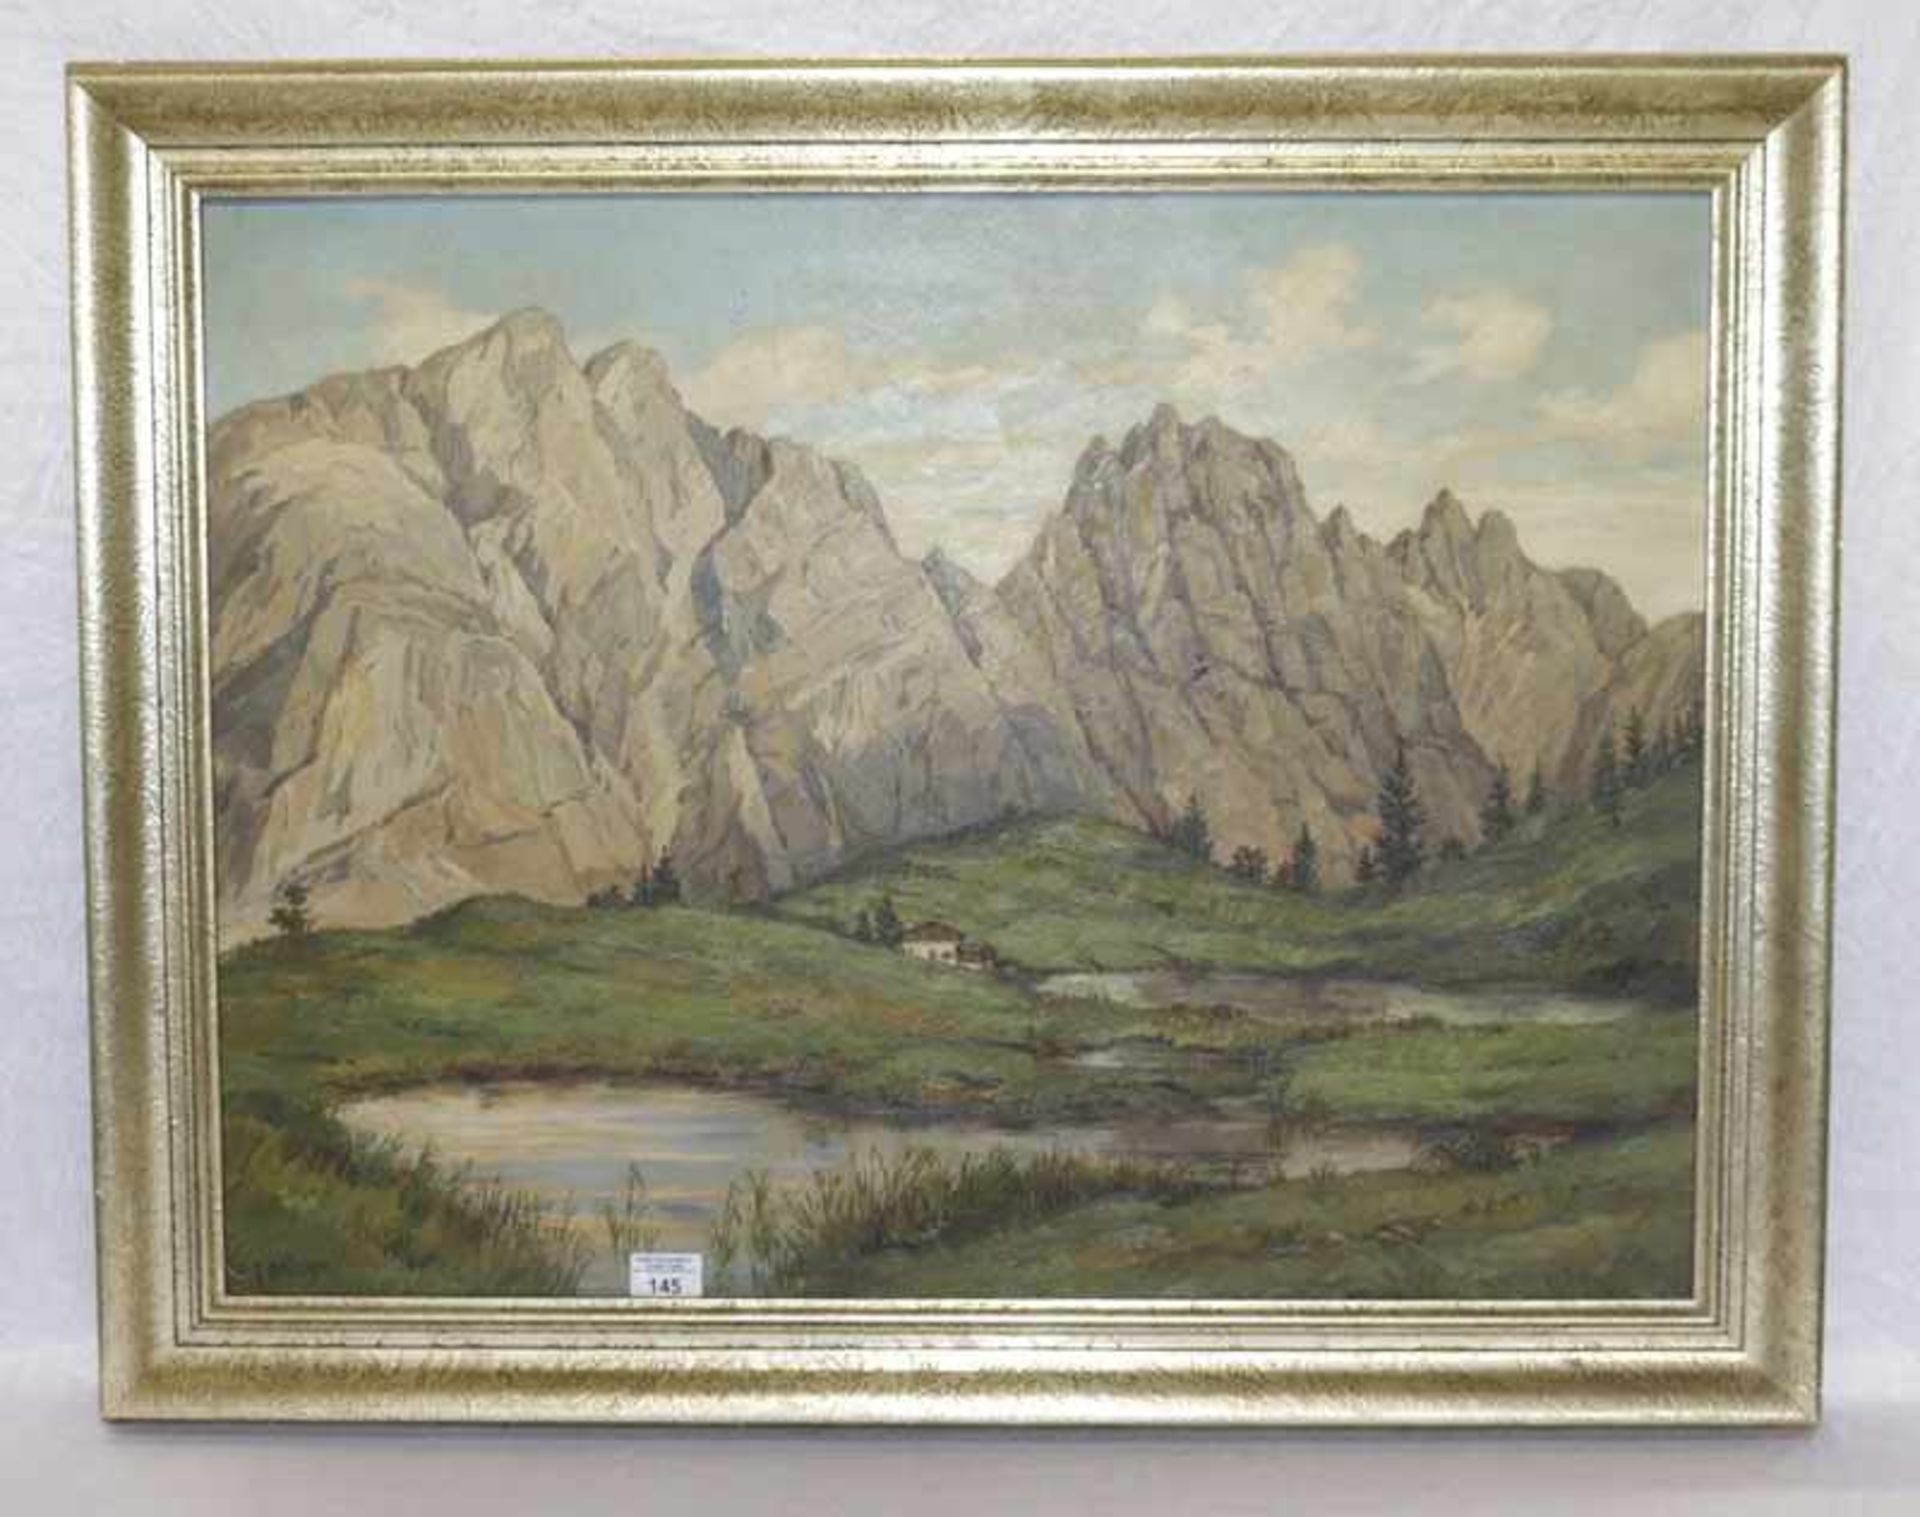 Gemälde ÖL/Hartfaser 'Dolomiten-Szenerie mit Haus', signiert E. Bröcker, gerahmt, Rahmen